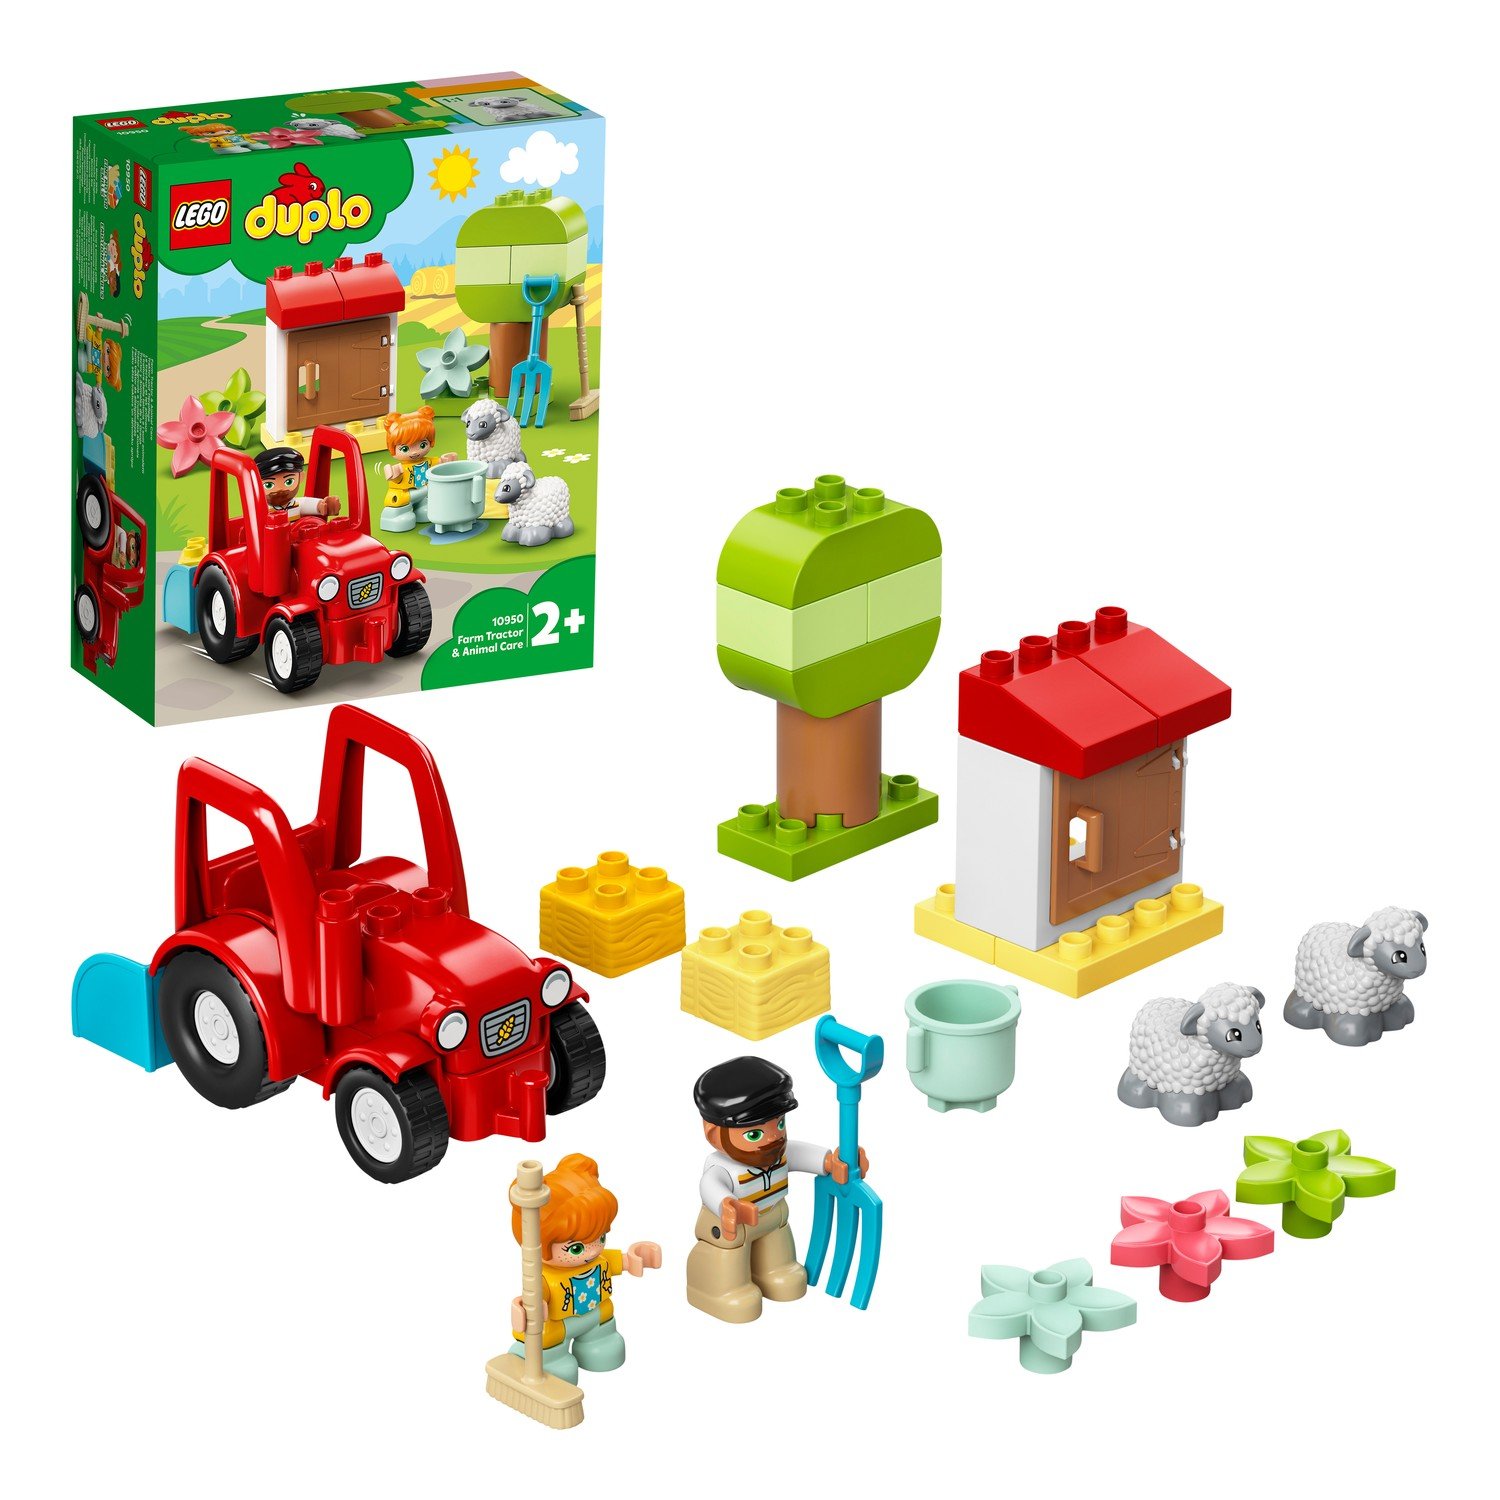 Конструктор LEGO DUPLO 10950 Фермерский трактор и животные